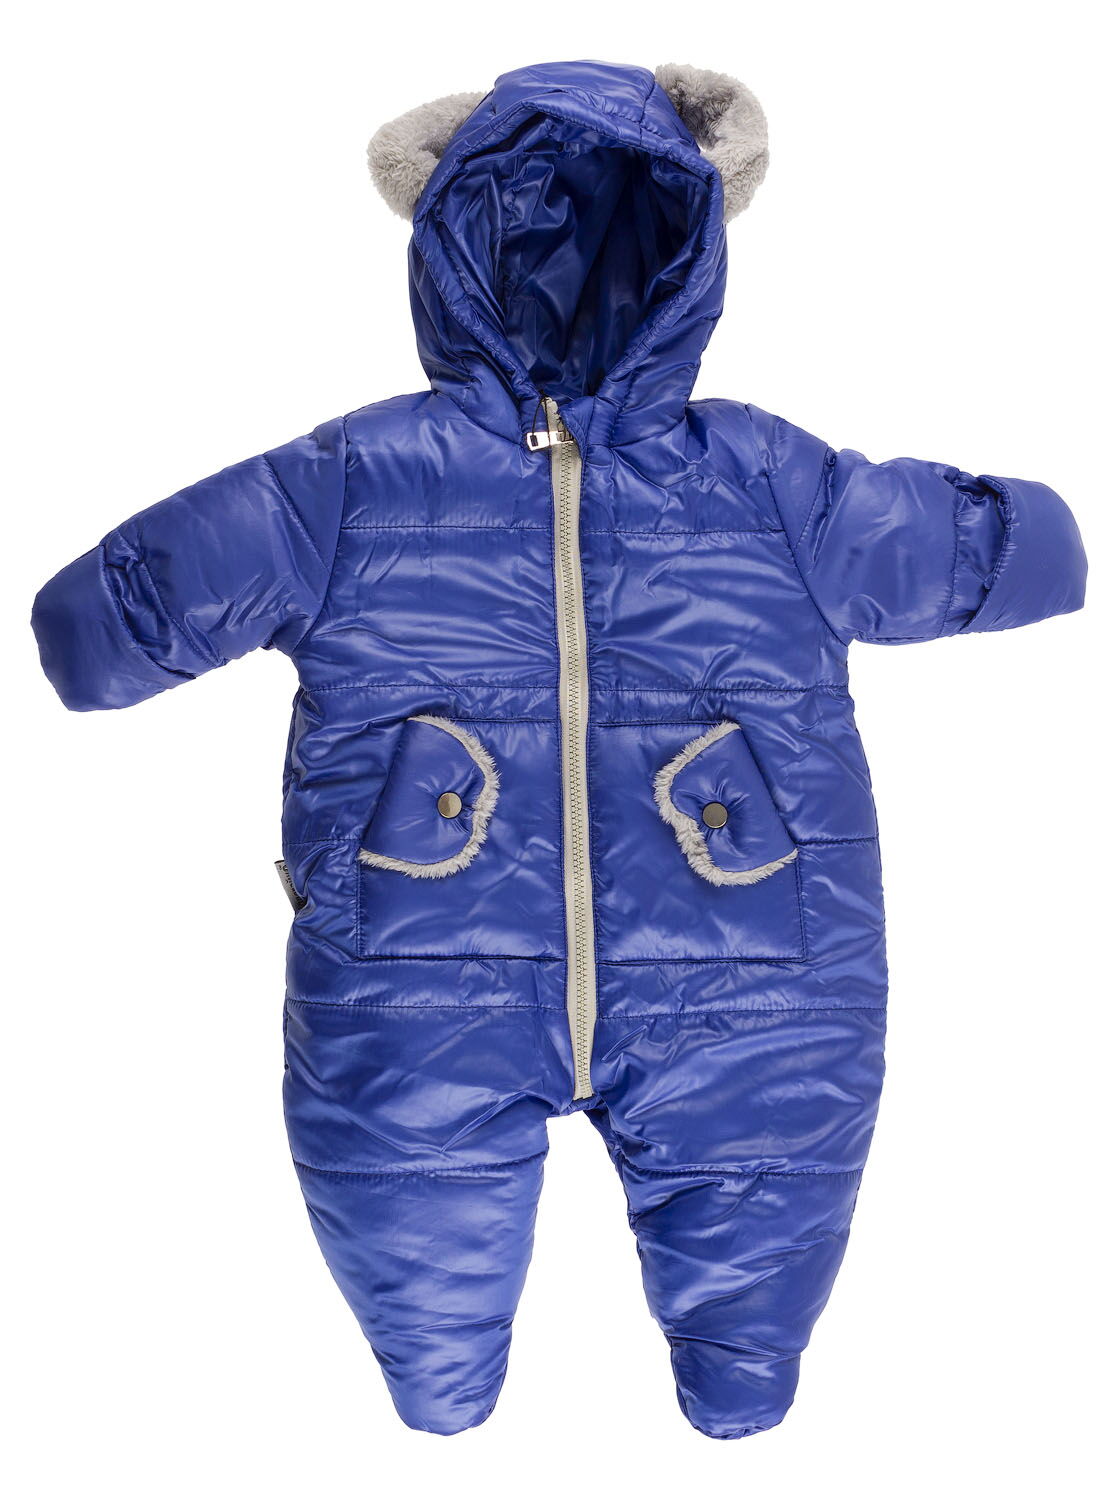 Комбинезон зимний Одягайко синий 32029 - цена